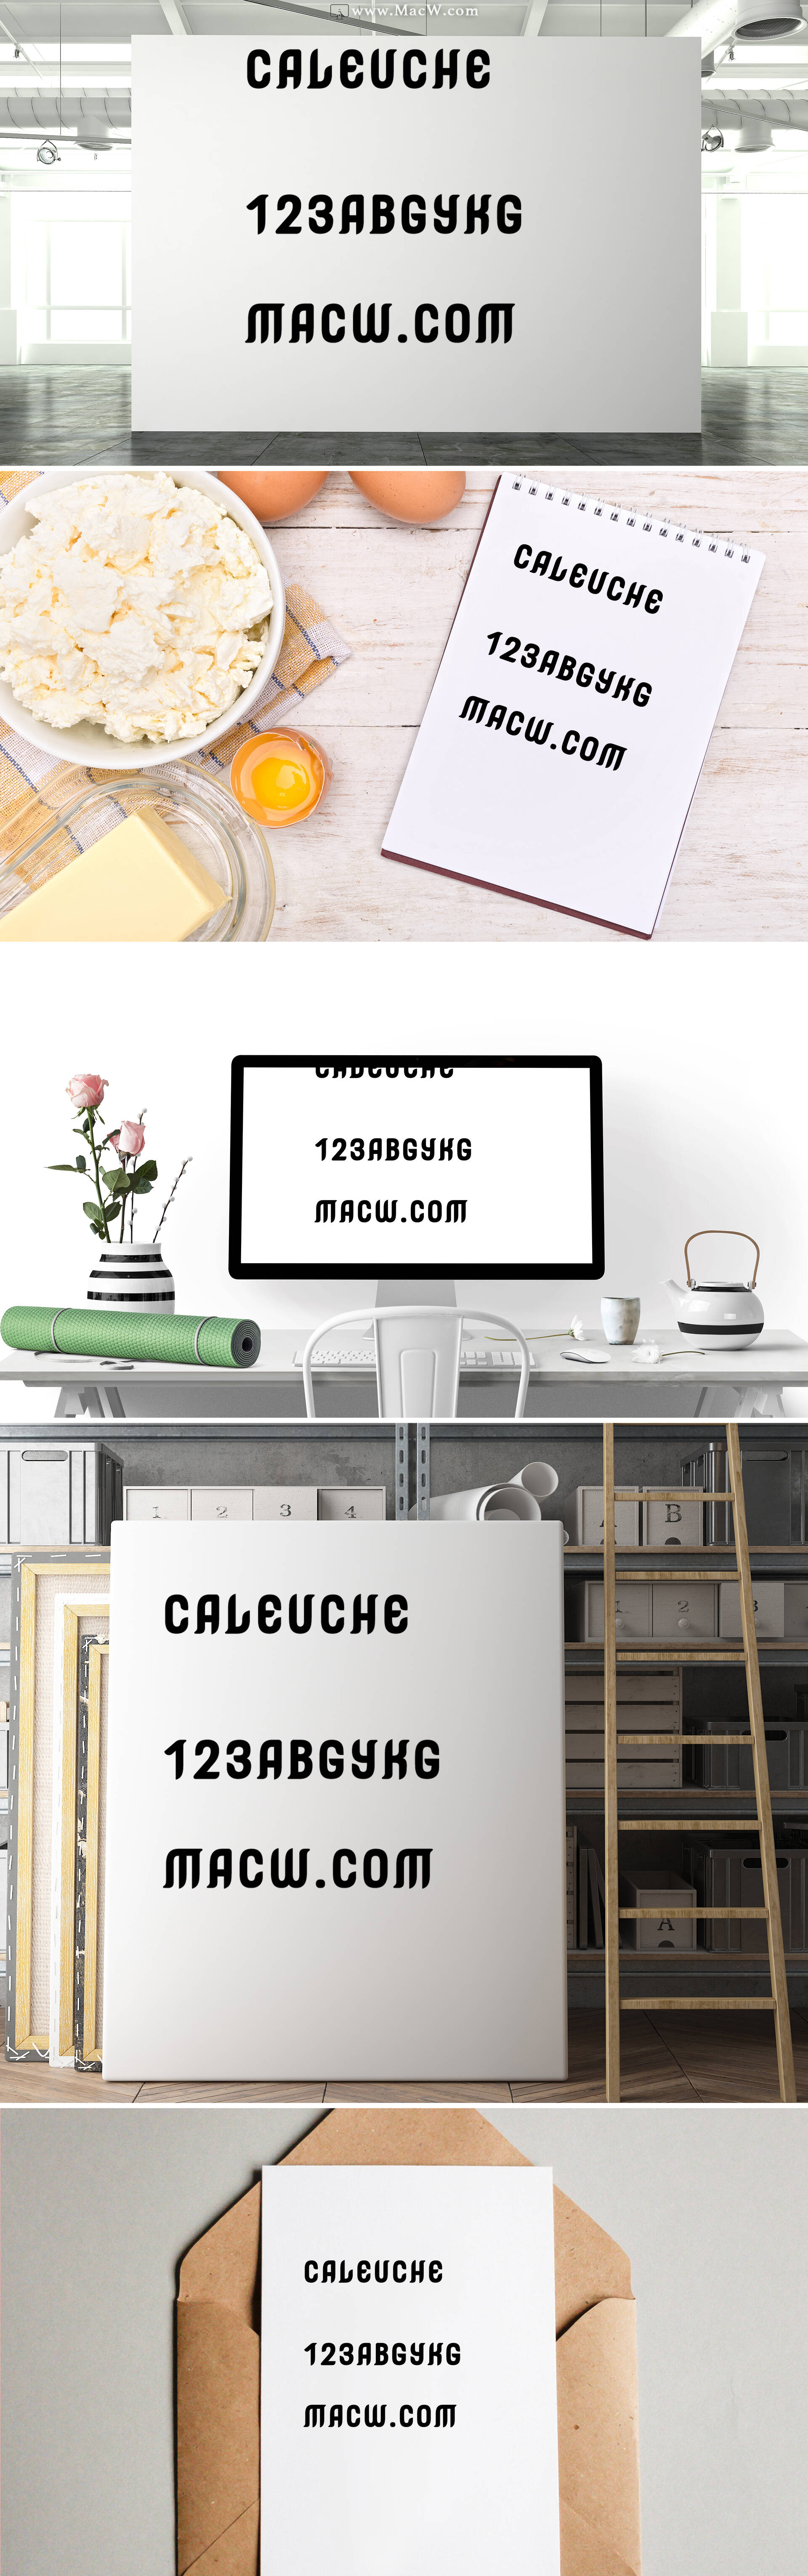 Caleuche复古艺术设计字体 for mac